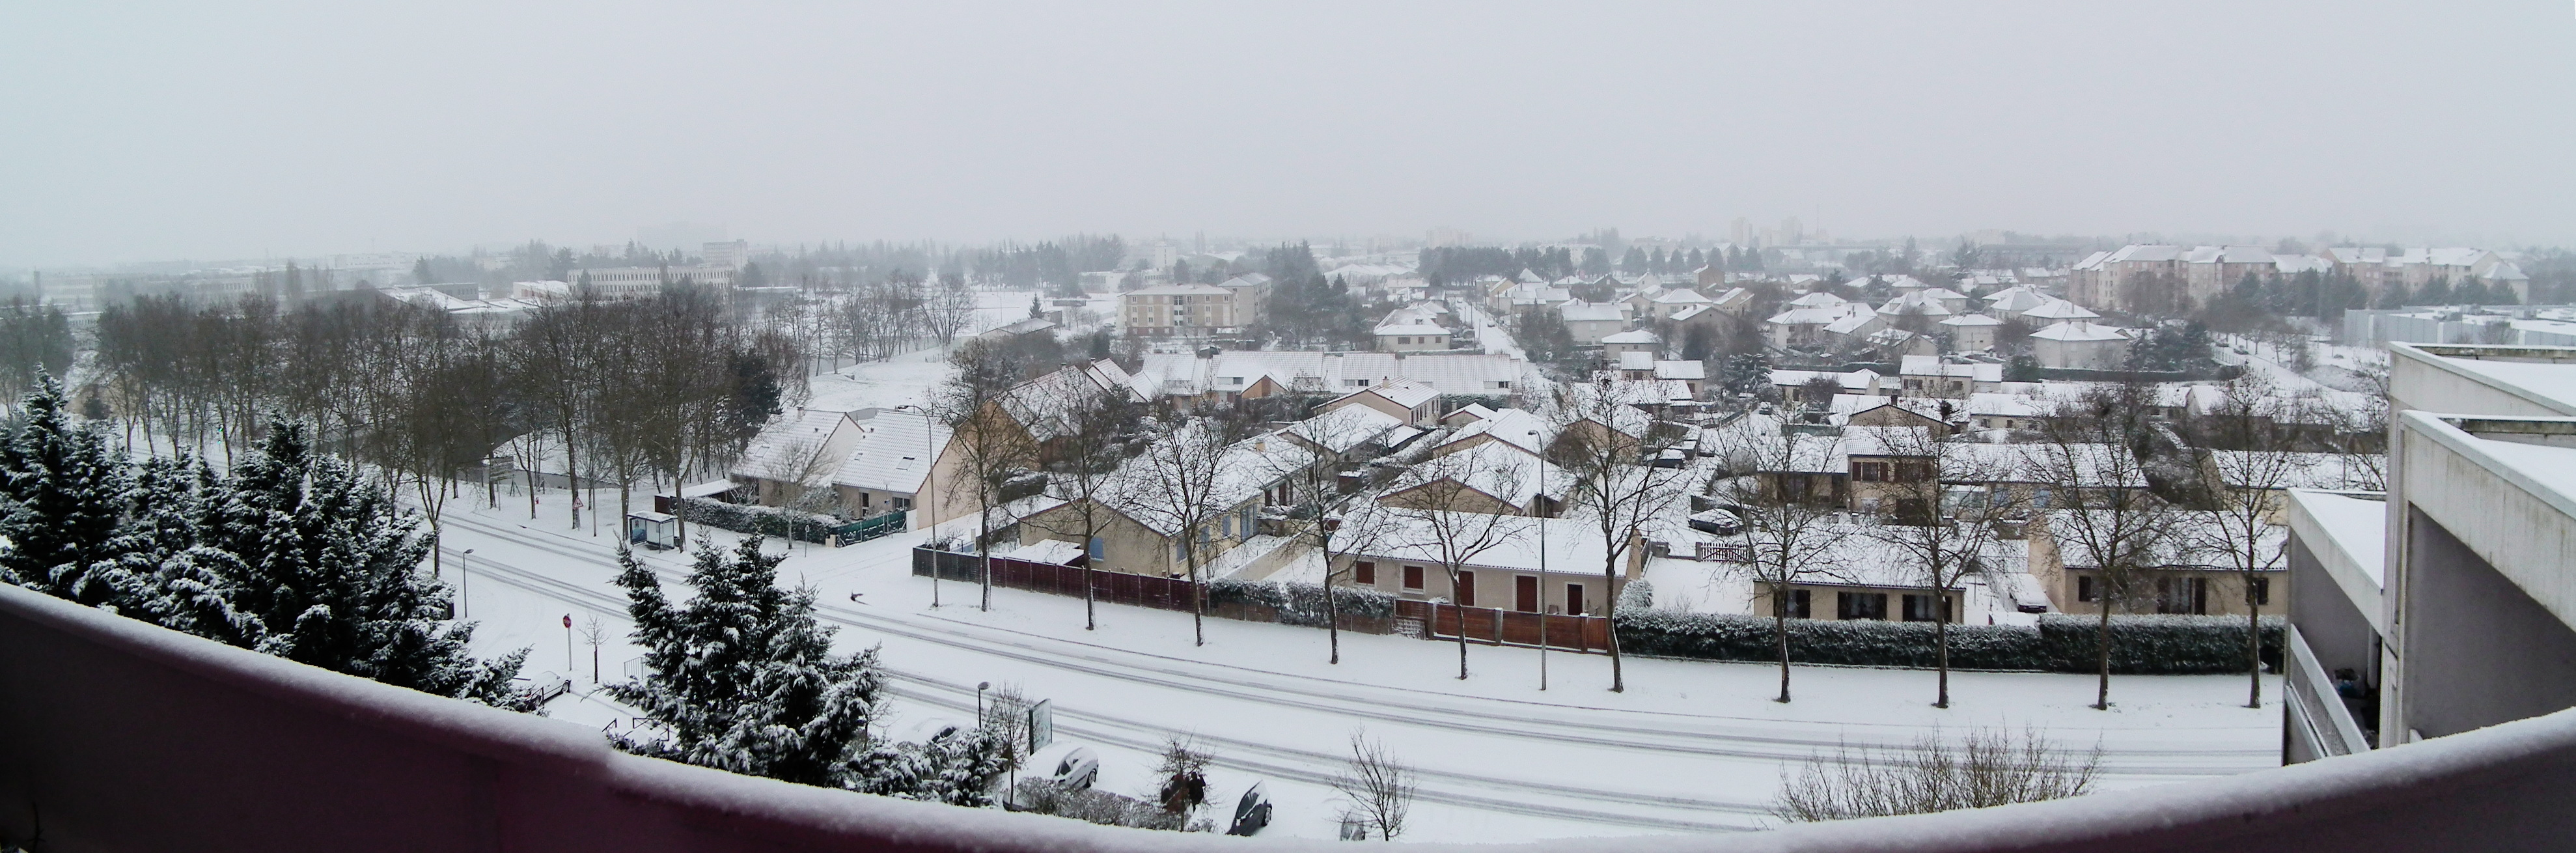 Beaulieu sous la neige (hiver 2012-2013) photo